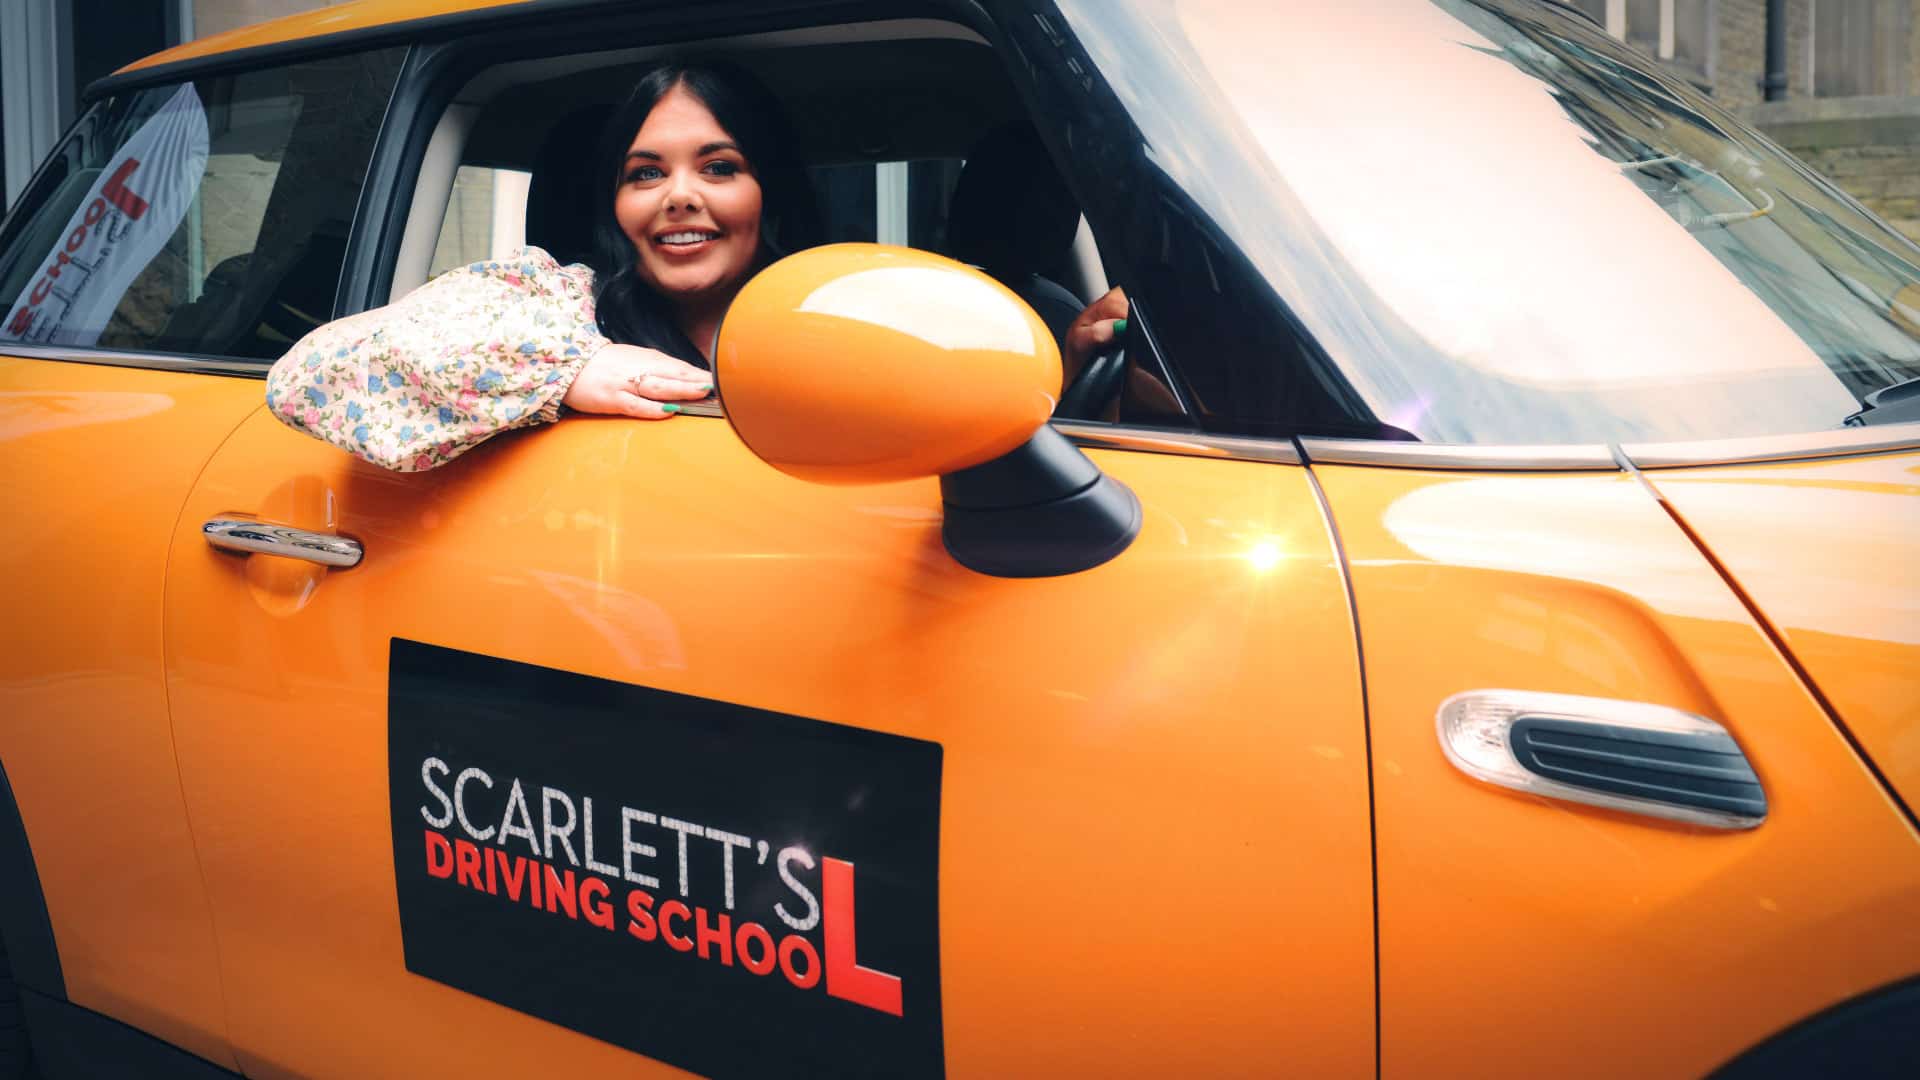 Scarlett’s Driving School